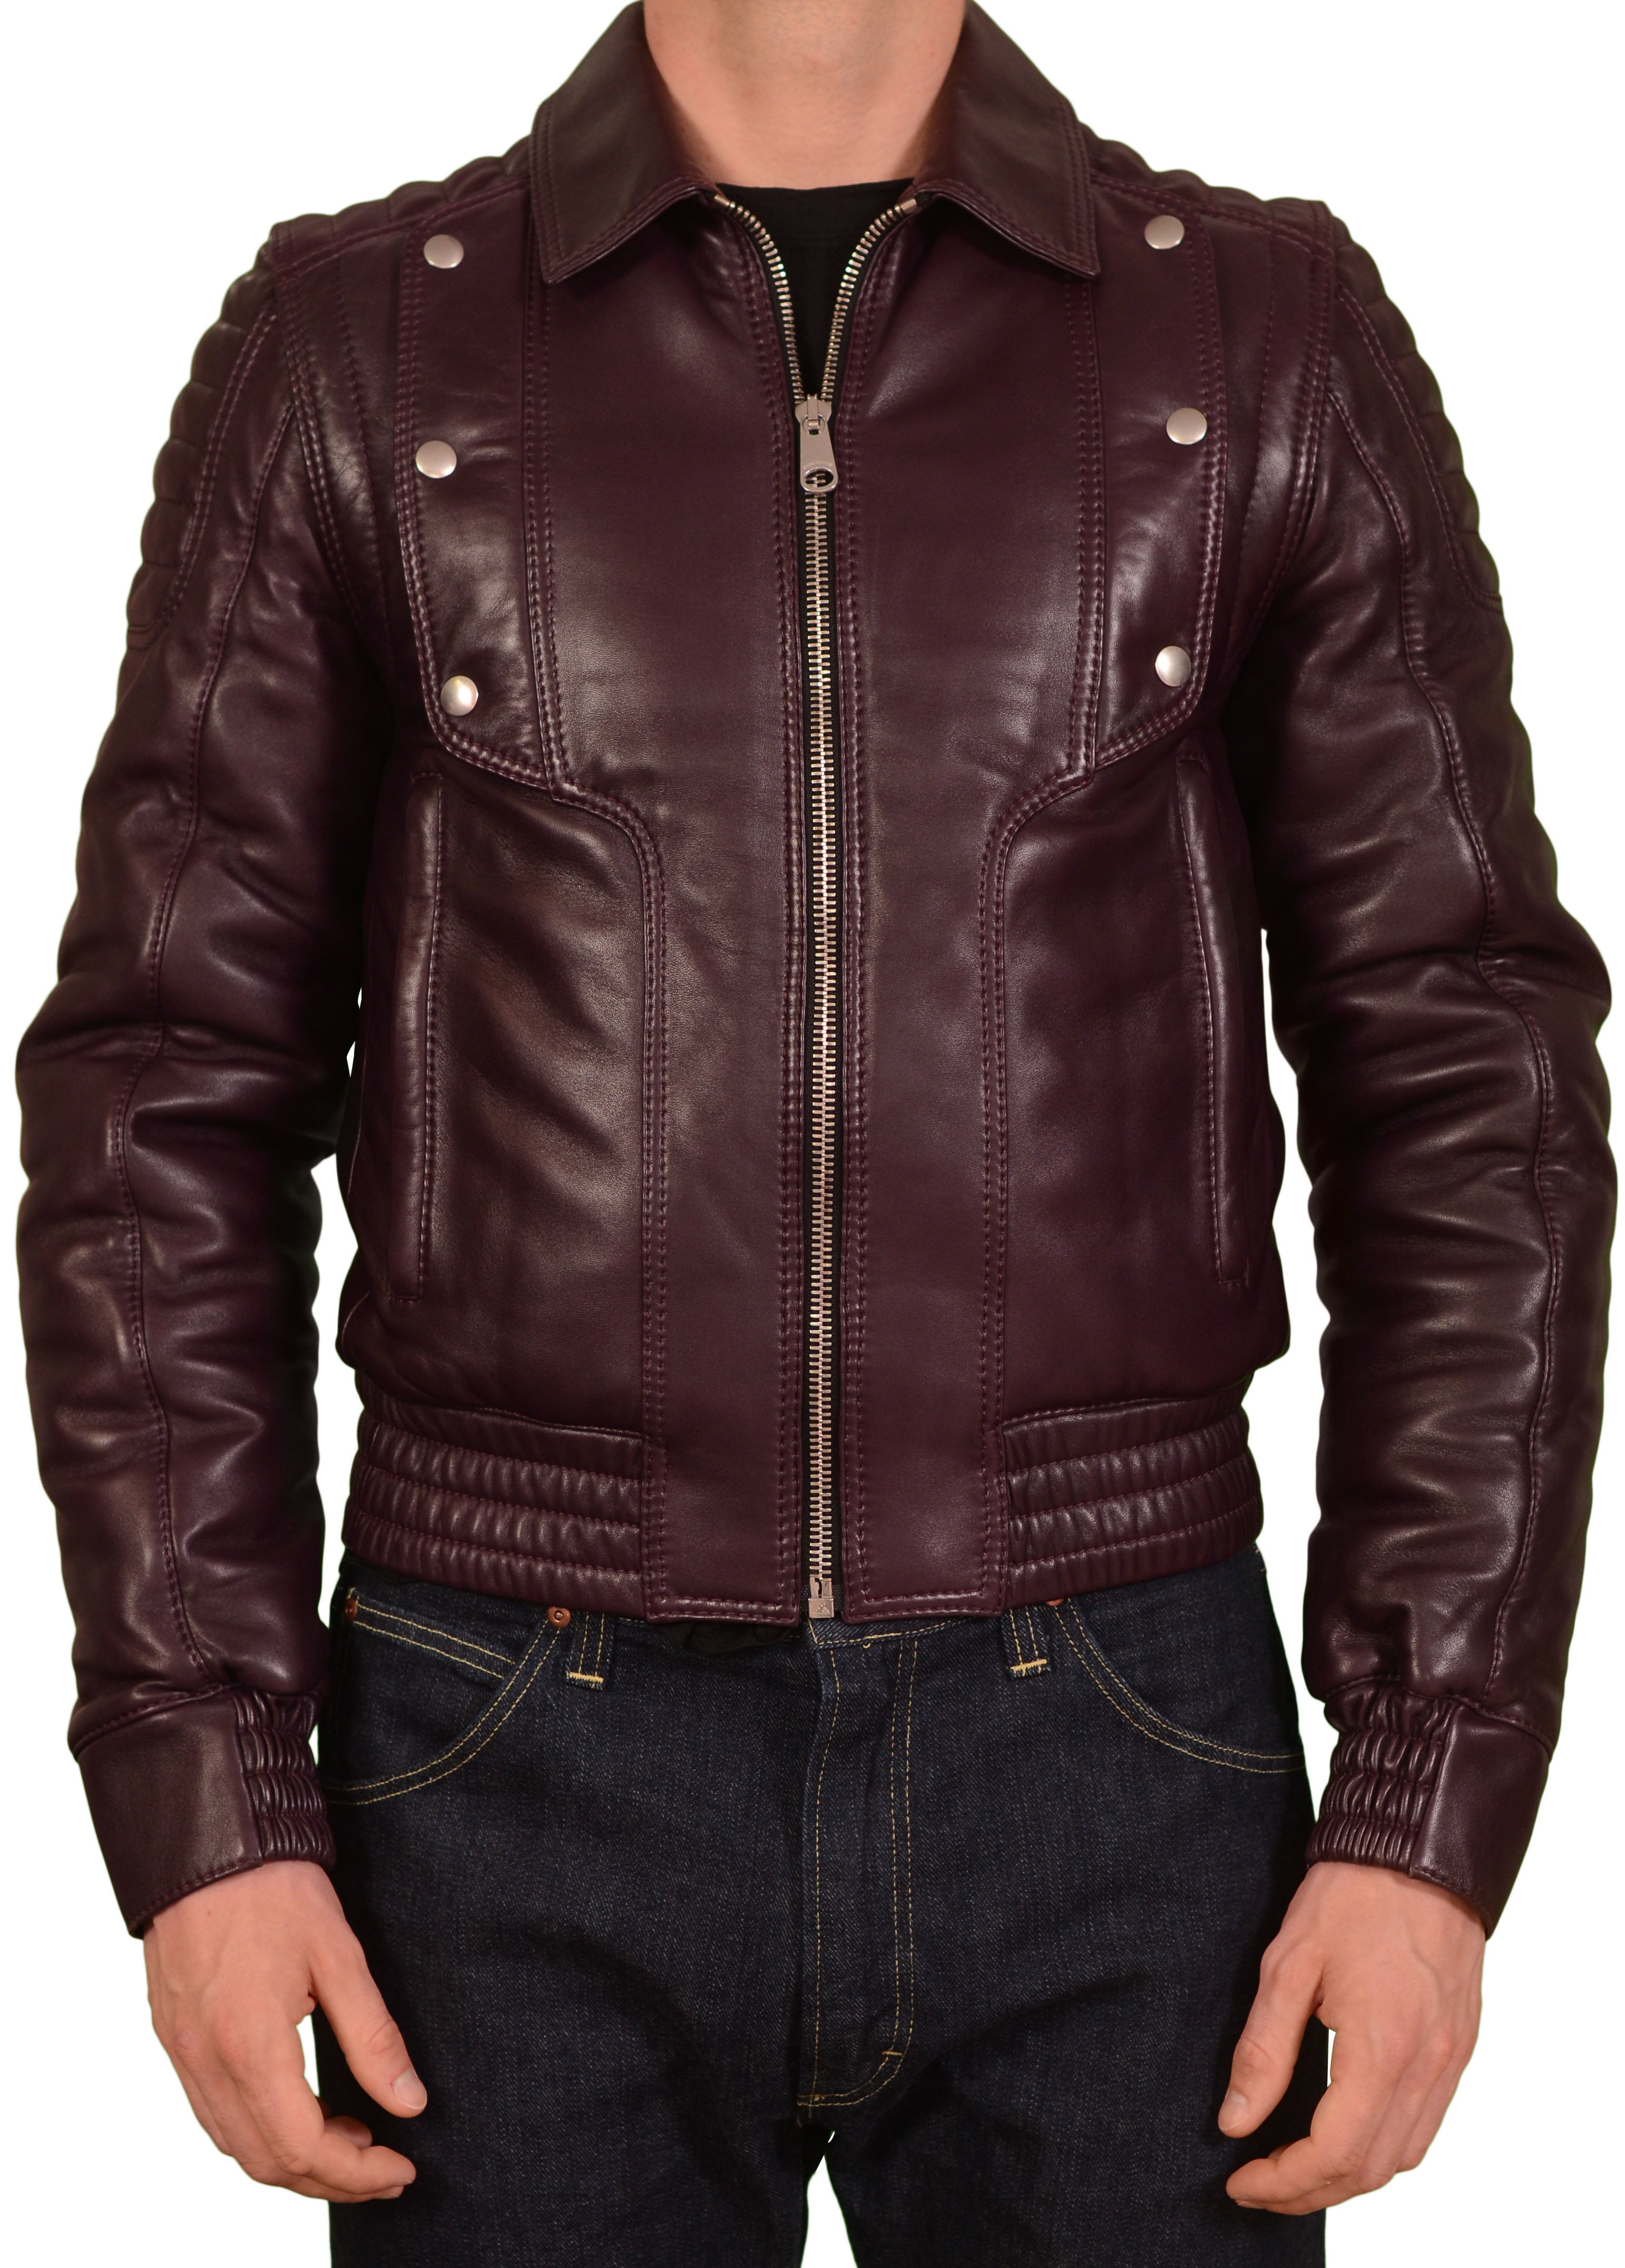 DIOR Homme Burgundy 2 In 1 Leather Padded Biker Jacket Vest 46 US XS 8